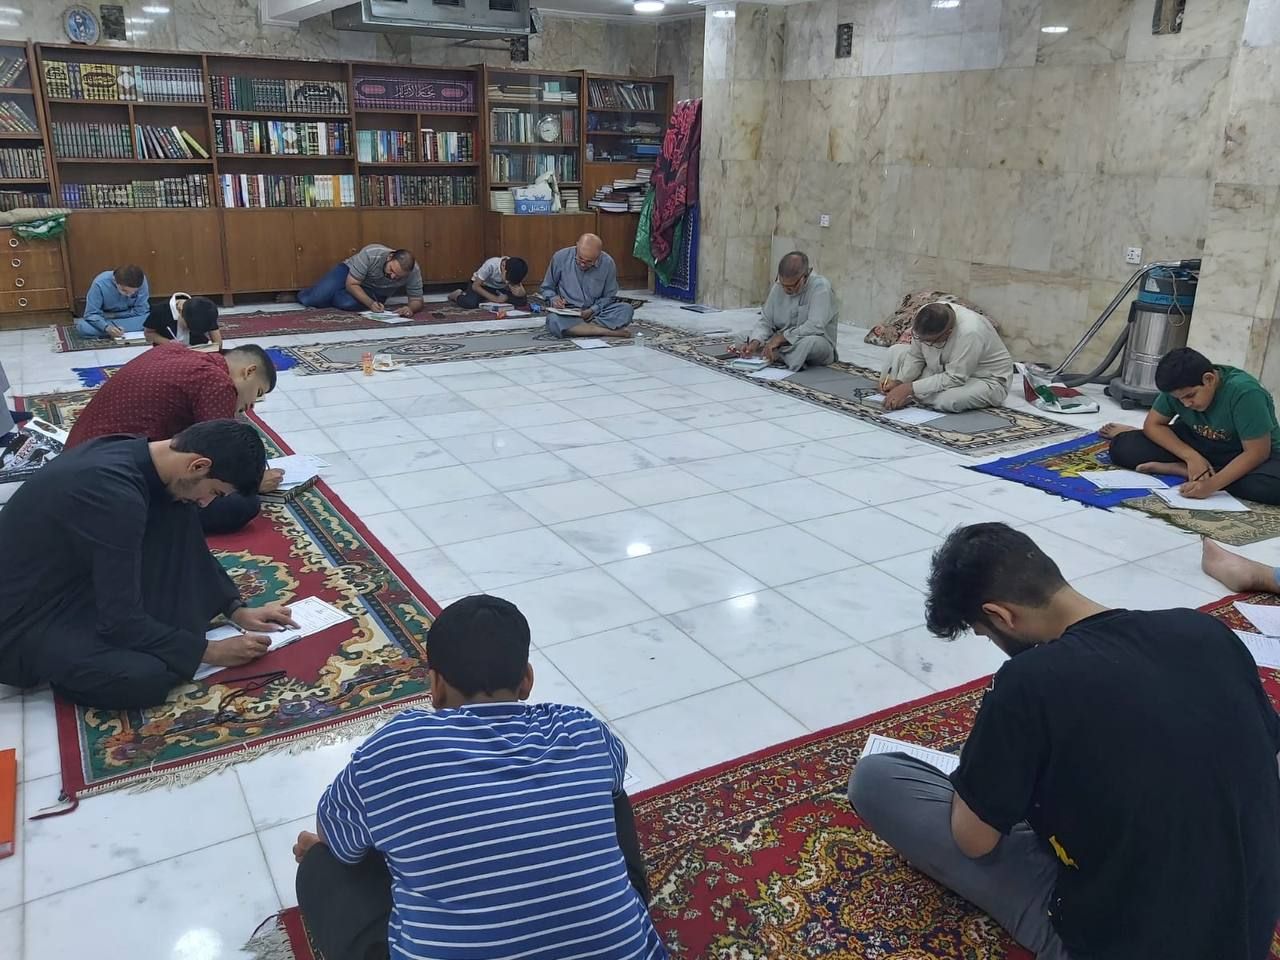 معهد القرآن الكريم يُجري اختباراً مركزياً موحداً لطلبة الدورات القرآنية في بغداد